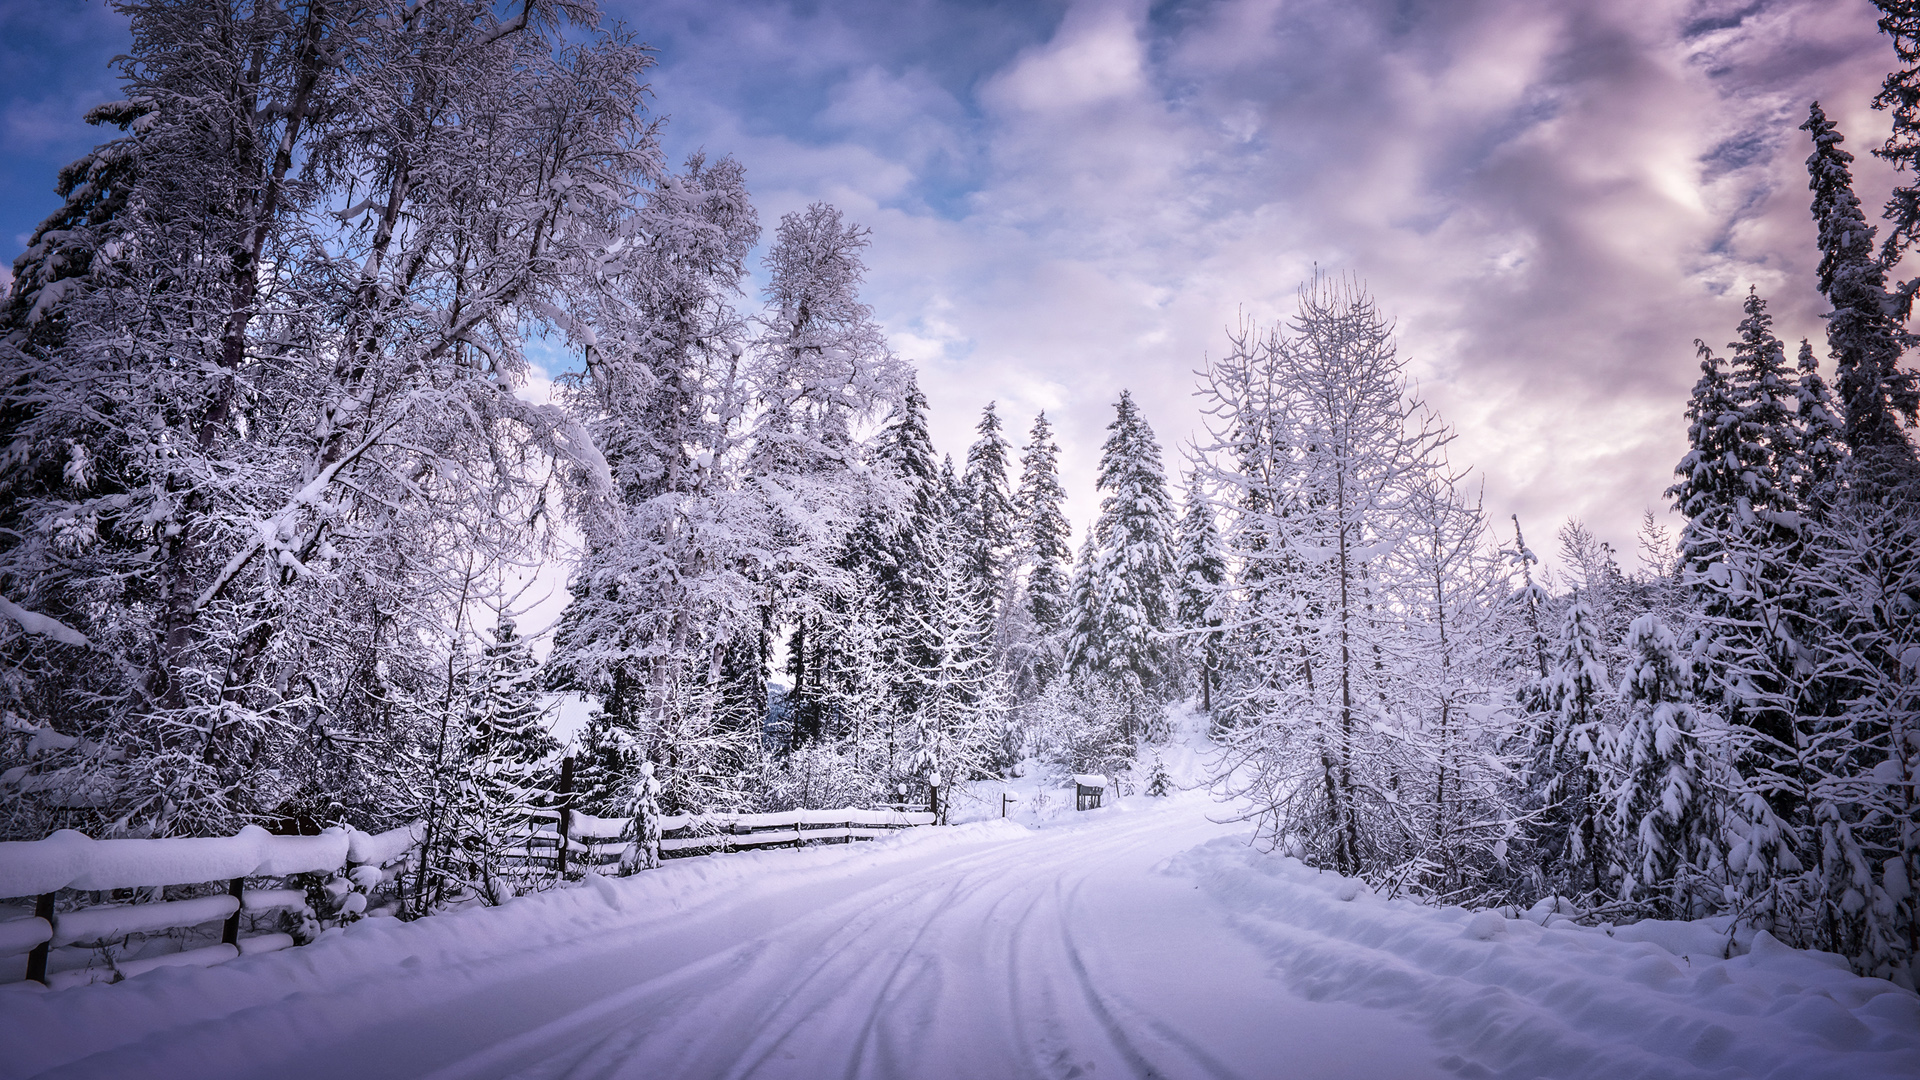 immagini di neve per lo sfondo,neve,inverno,cielo,natura,albero